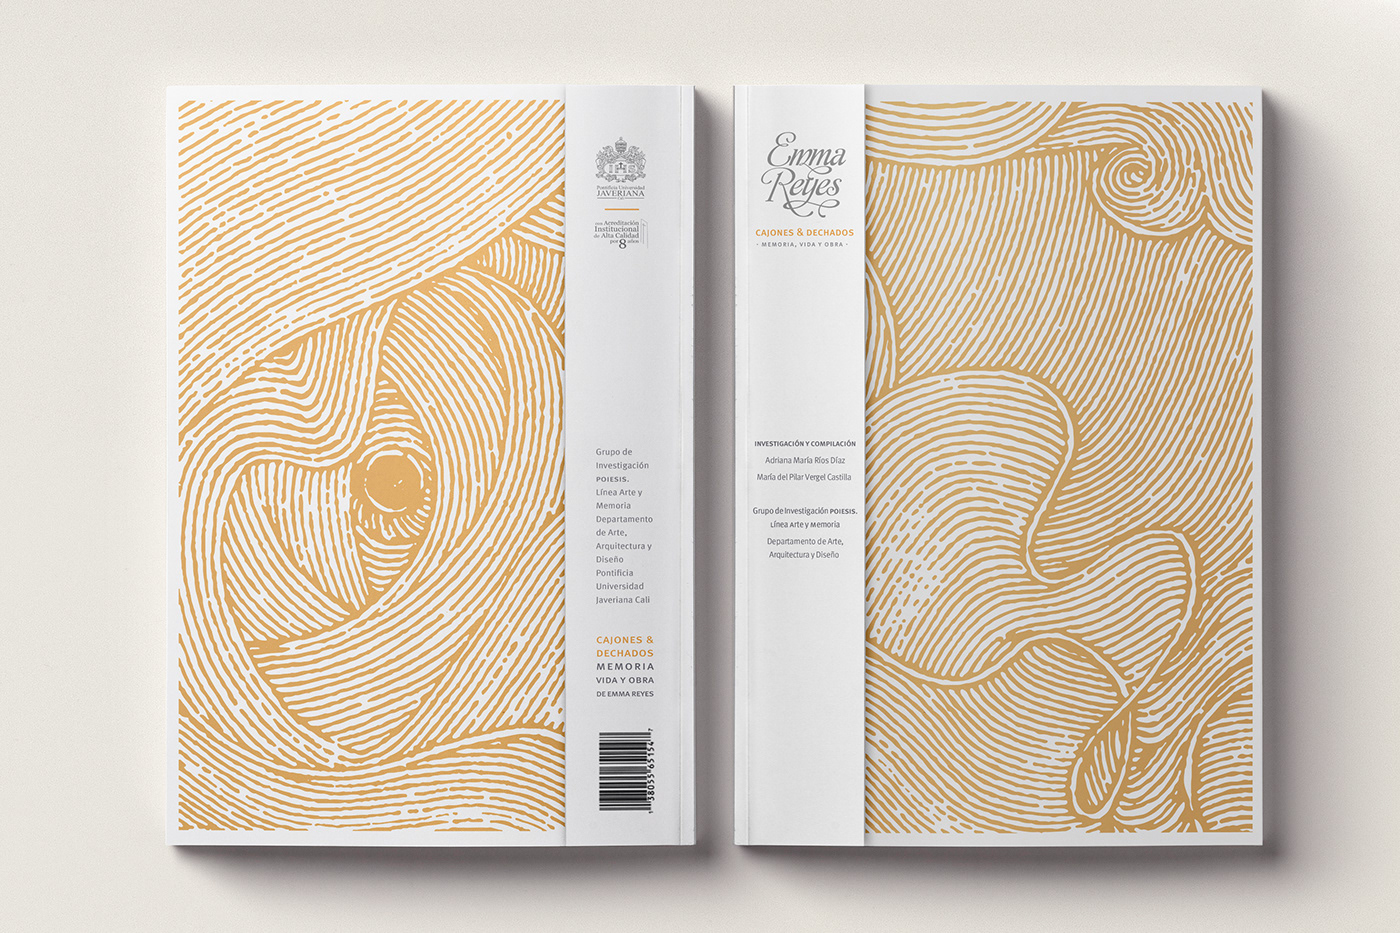 art book design editorial featured editorial design 